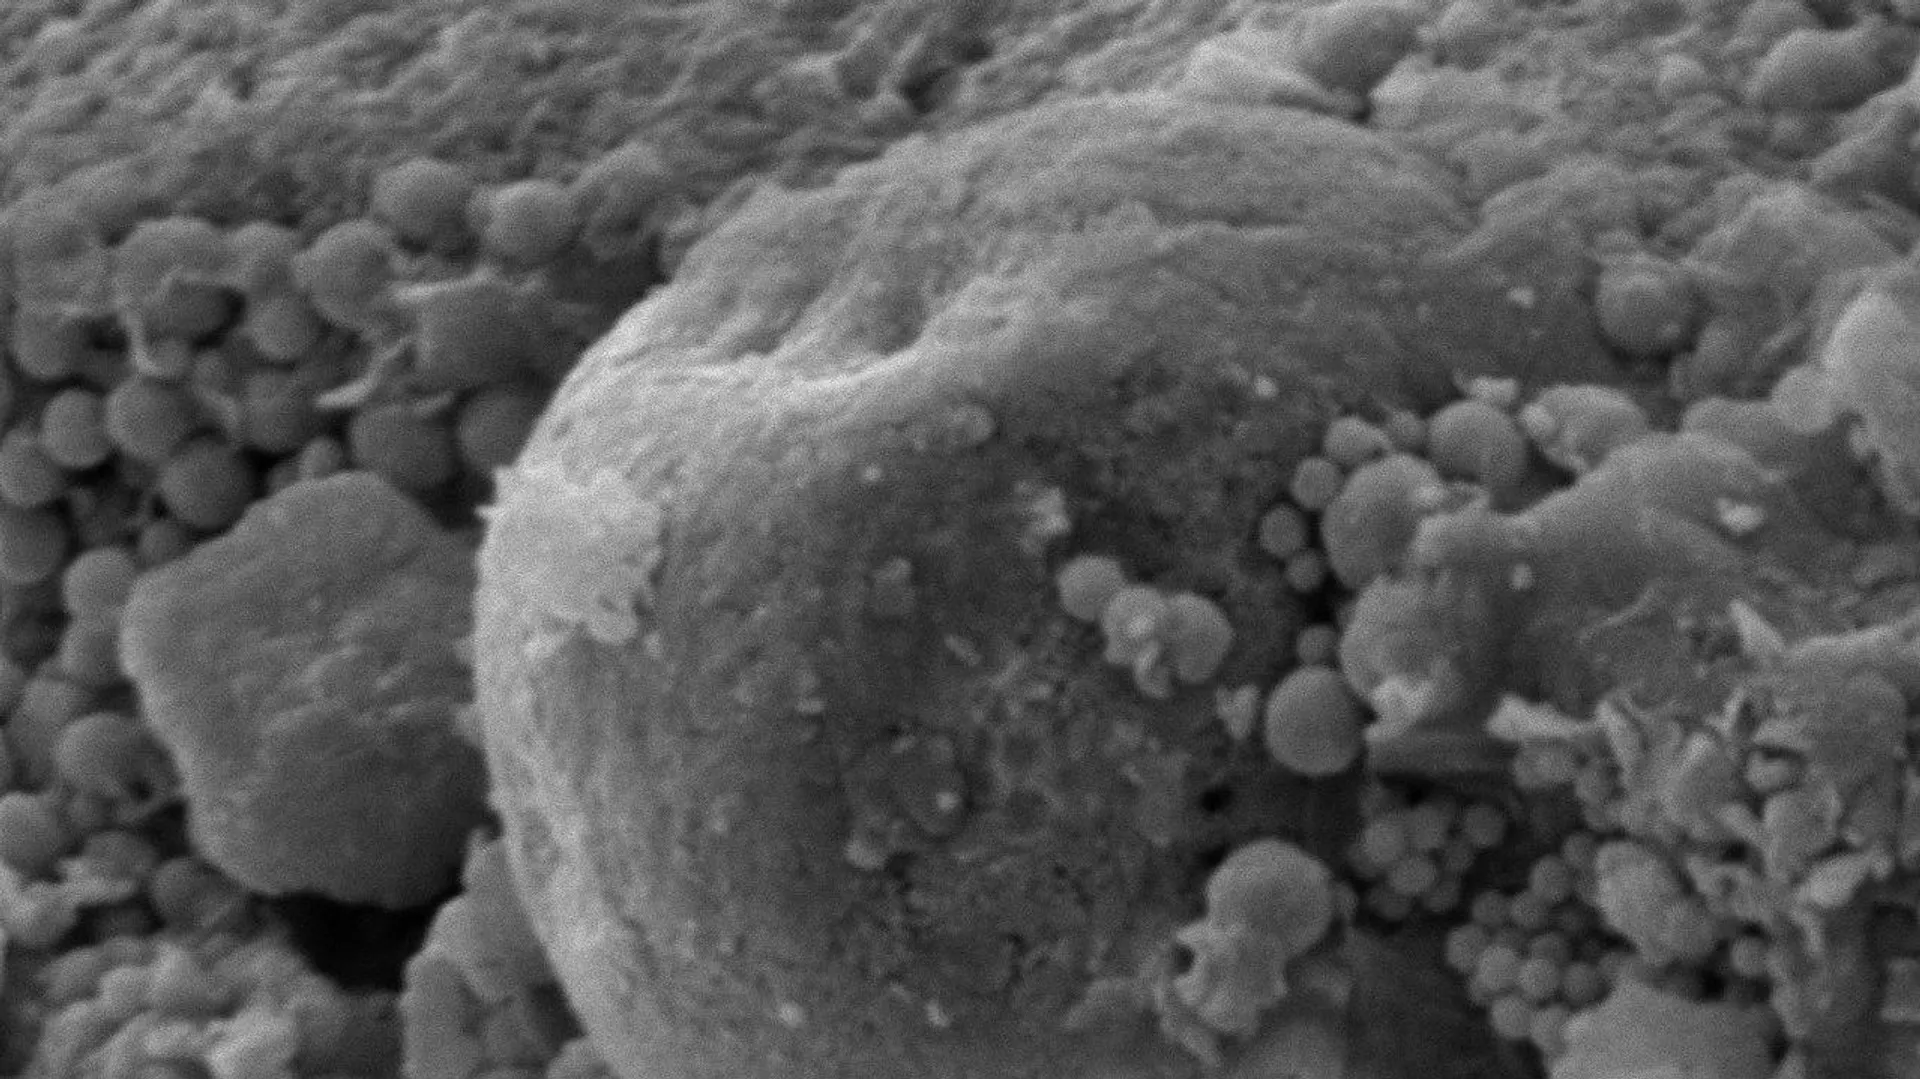 Снимок окаменелых микроорганизмов, обнаруженных внутри метеорита Оргей - РИА Новости, 1920, 15.09.2020